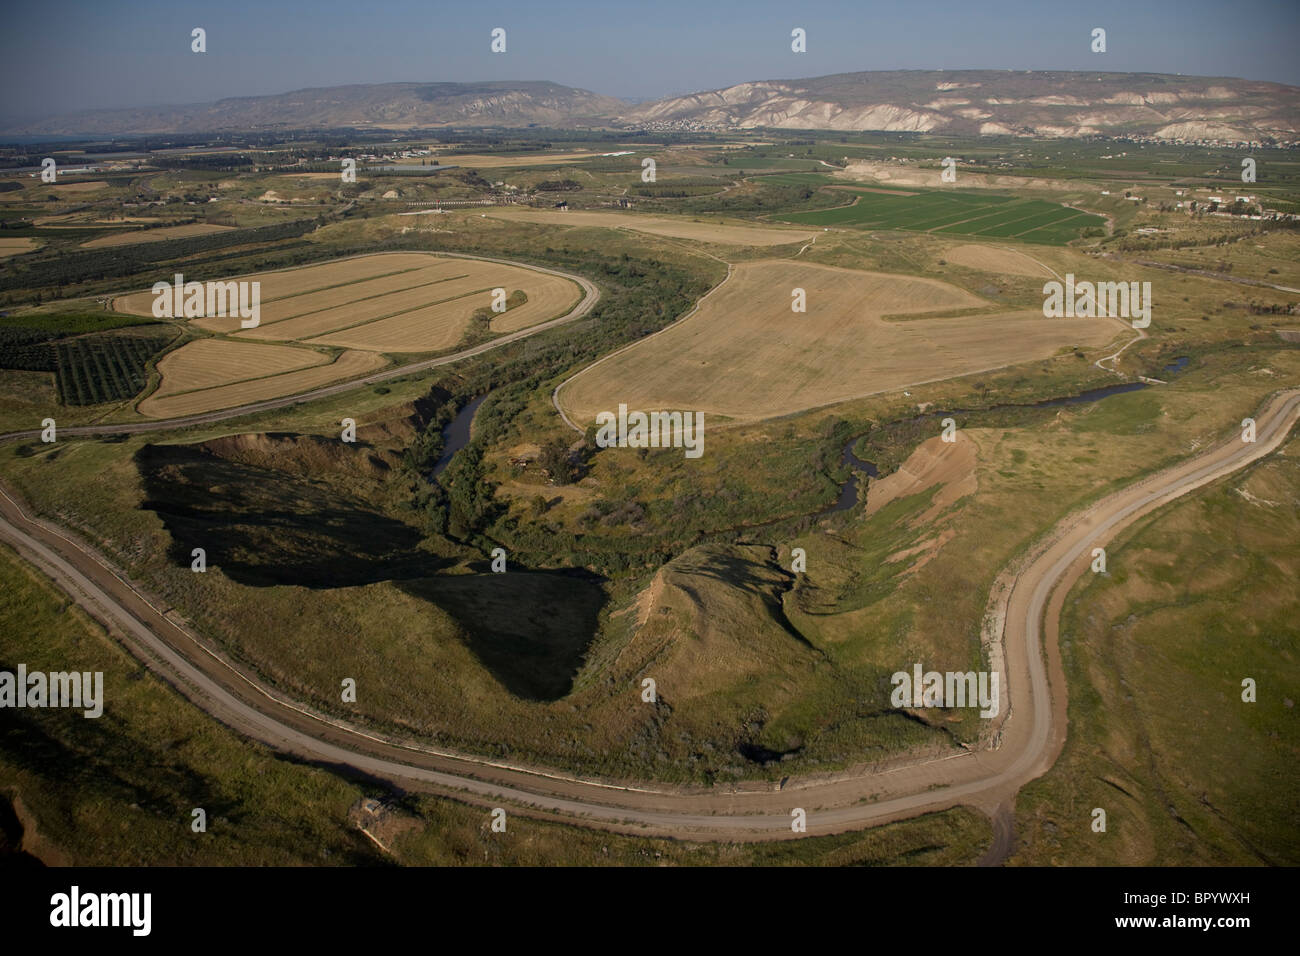 Fotografia aerea dell'agricoltura i campi della valle del Giordano vicino al mare di Galilea Foto Stock